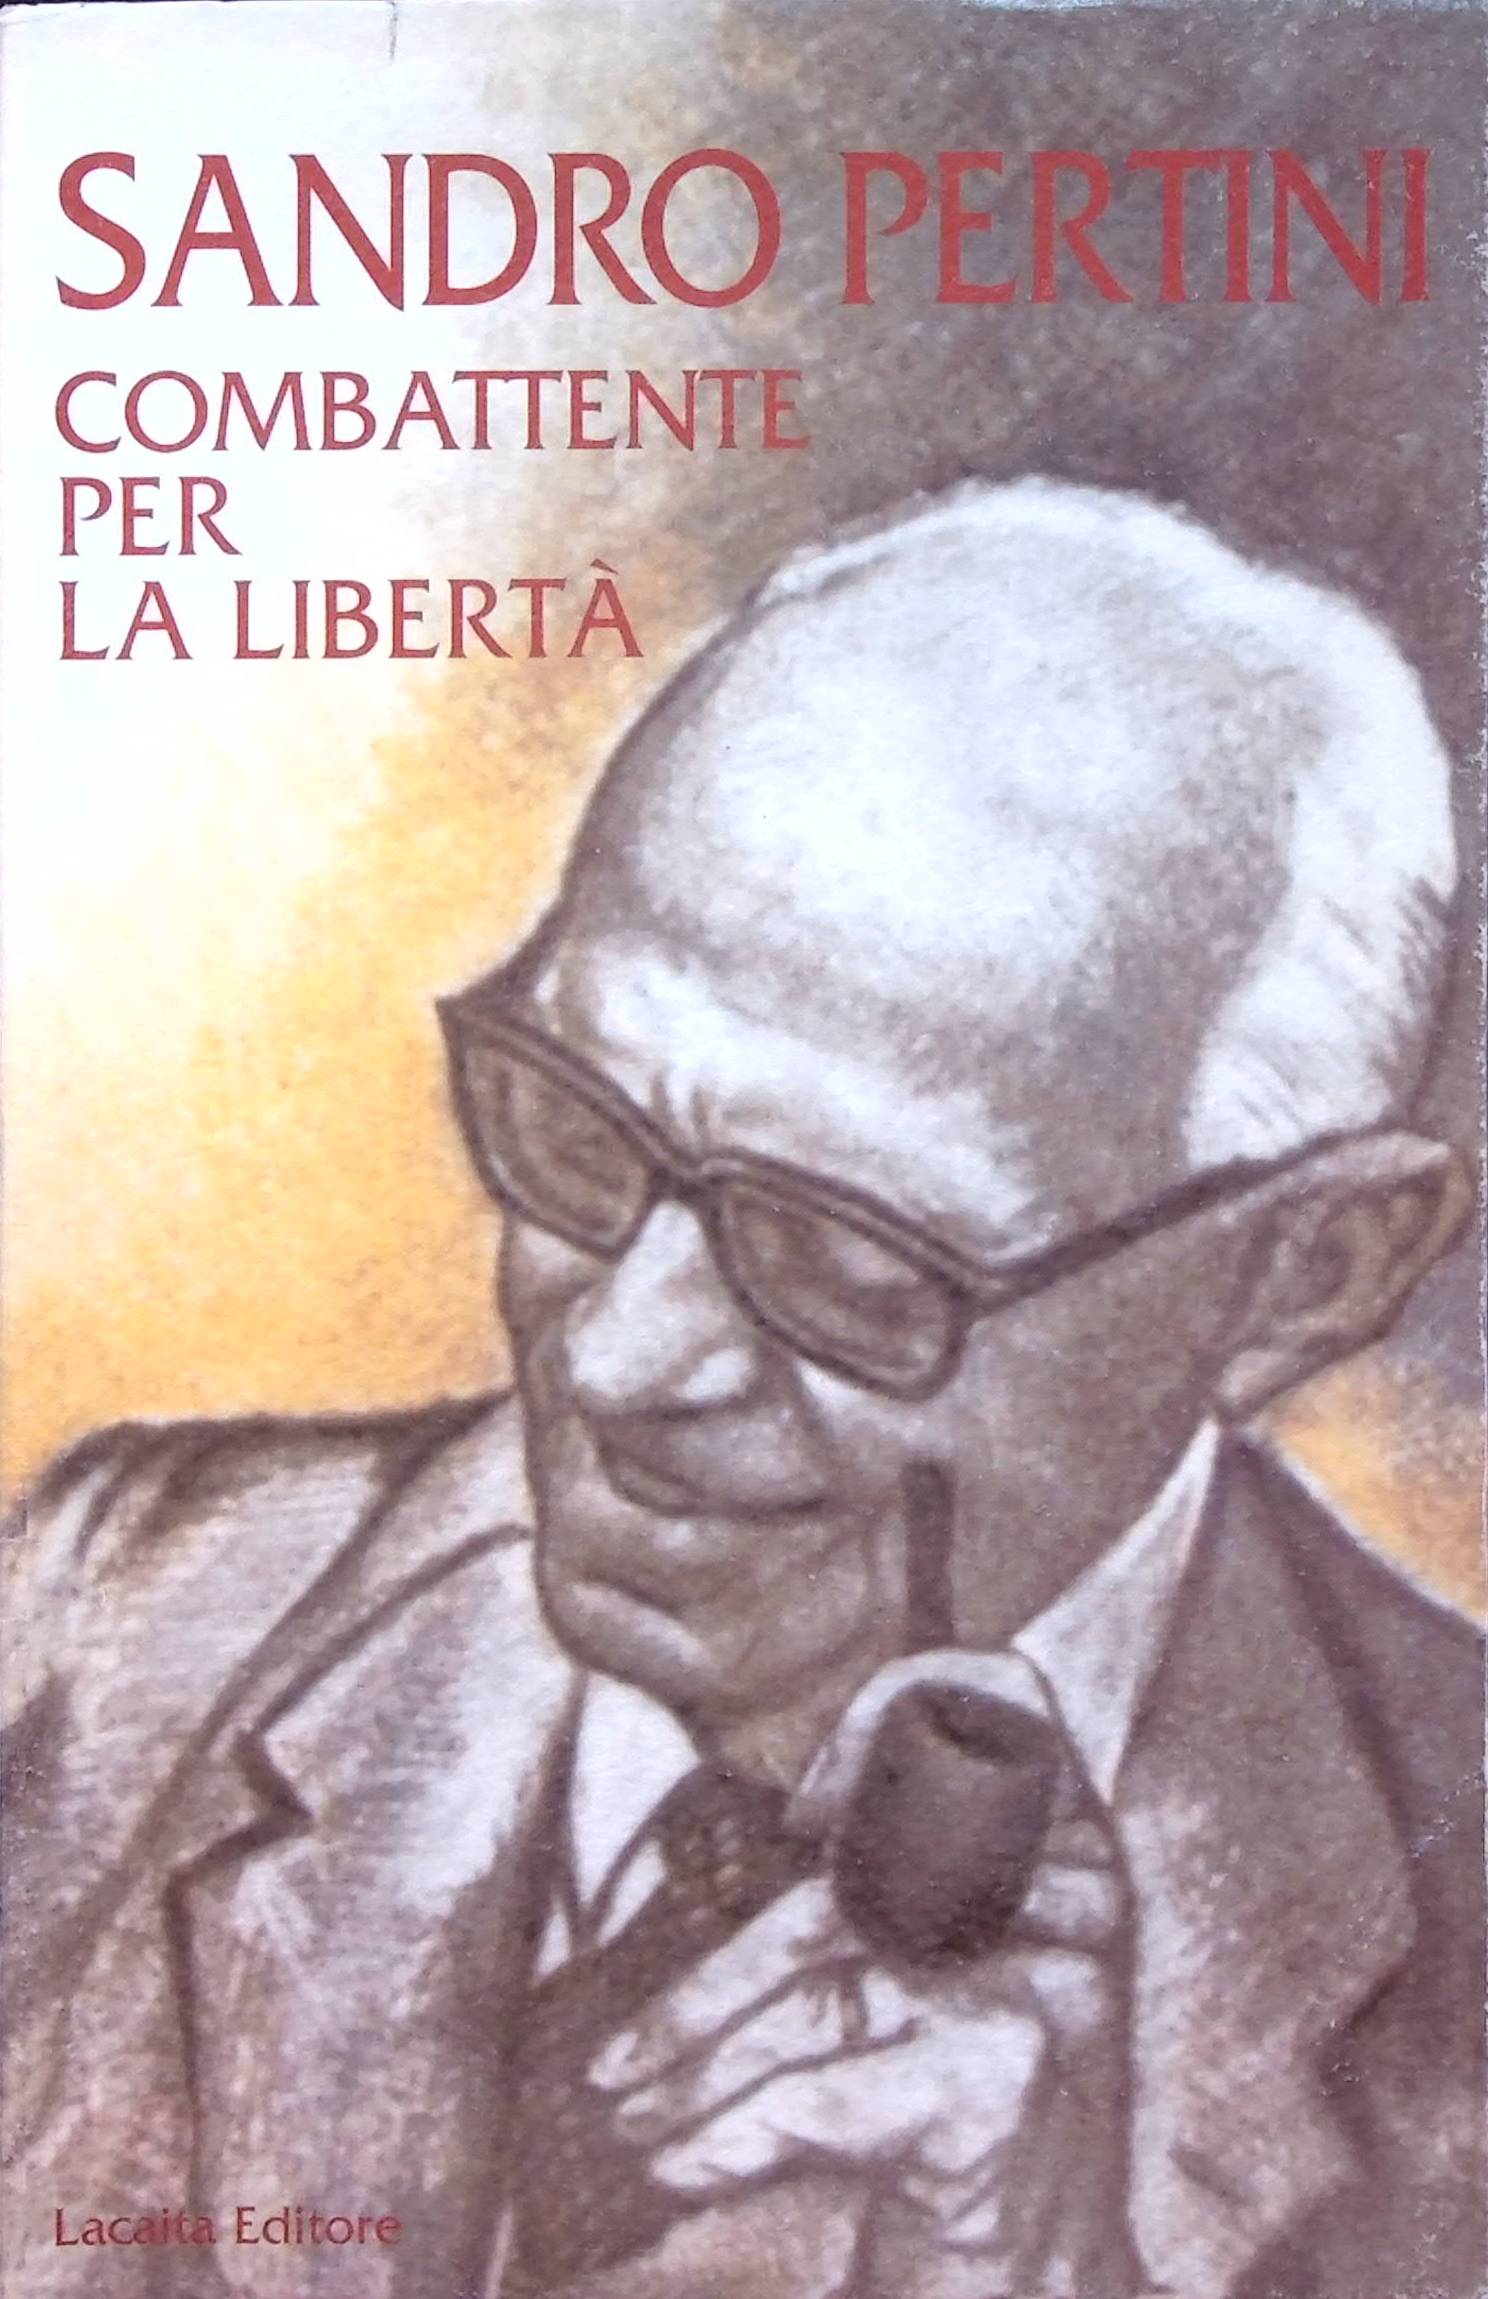 Sandro Pertini combattente per la liberta